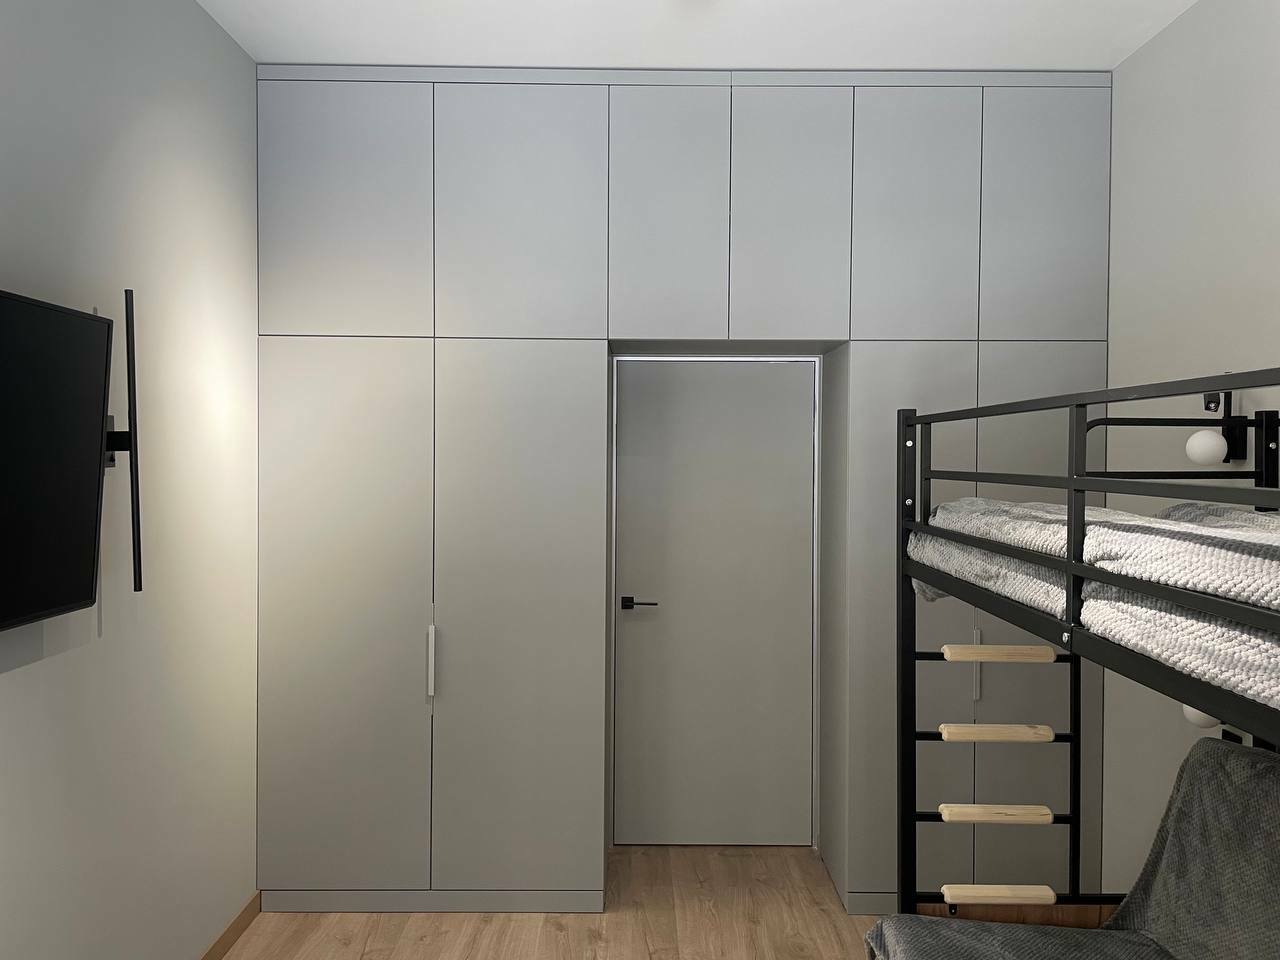 Серый распашной шкаф из МДФ с антресолью, установленный в спальной вокруг дверного проема, на заказ